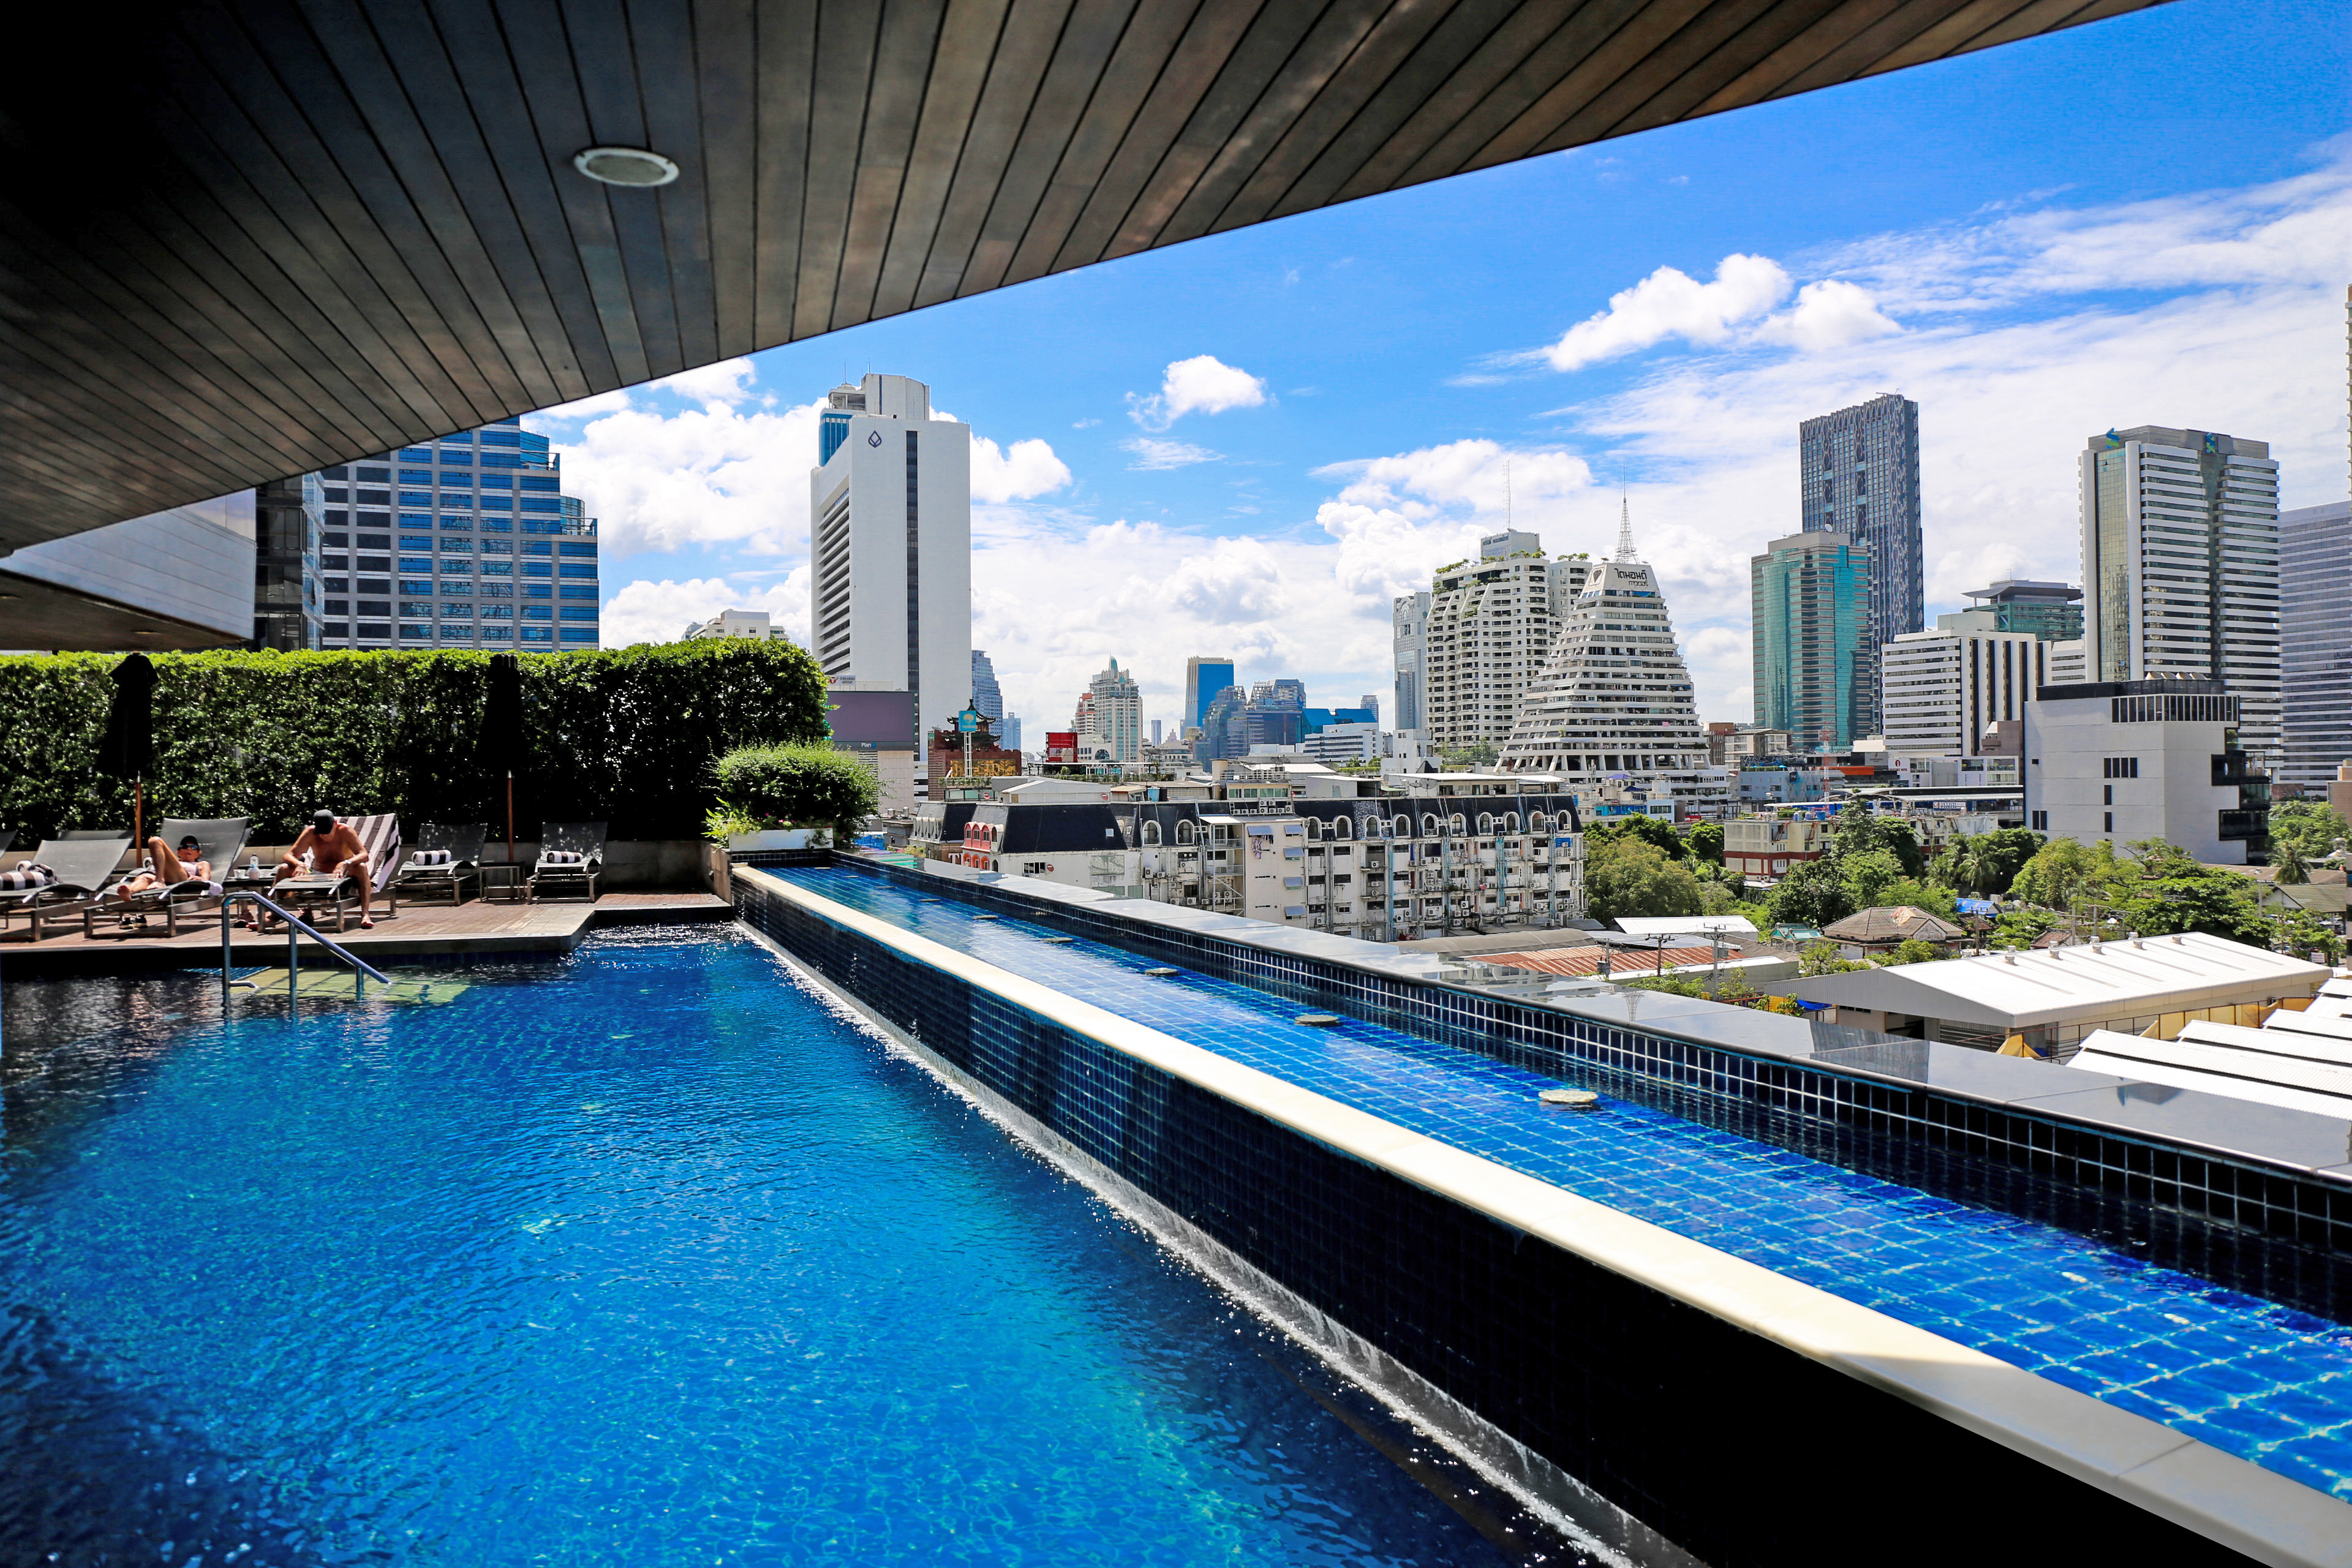 Бассейн в бангкоке. Пульман Бангкок. Гостиница Пулман Бангкок. Pullman Bangkok Hotel g 5*. Бангкок бассейн.